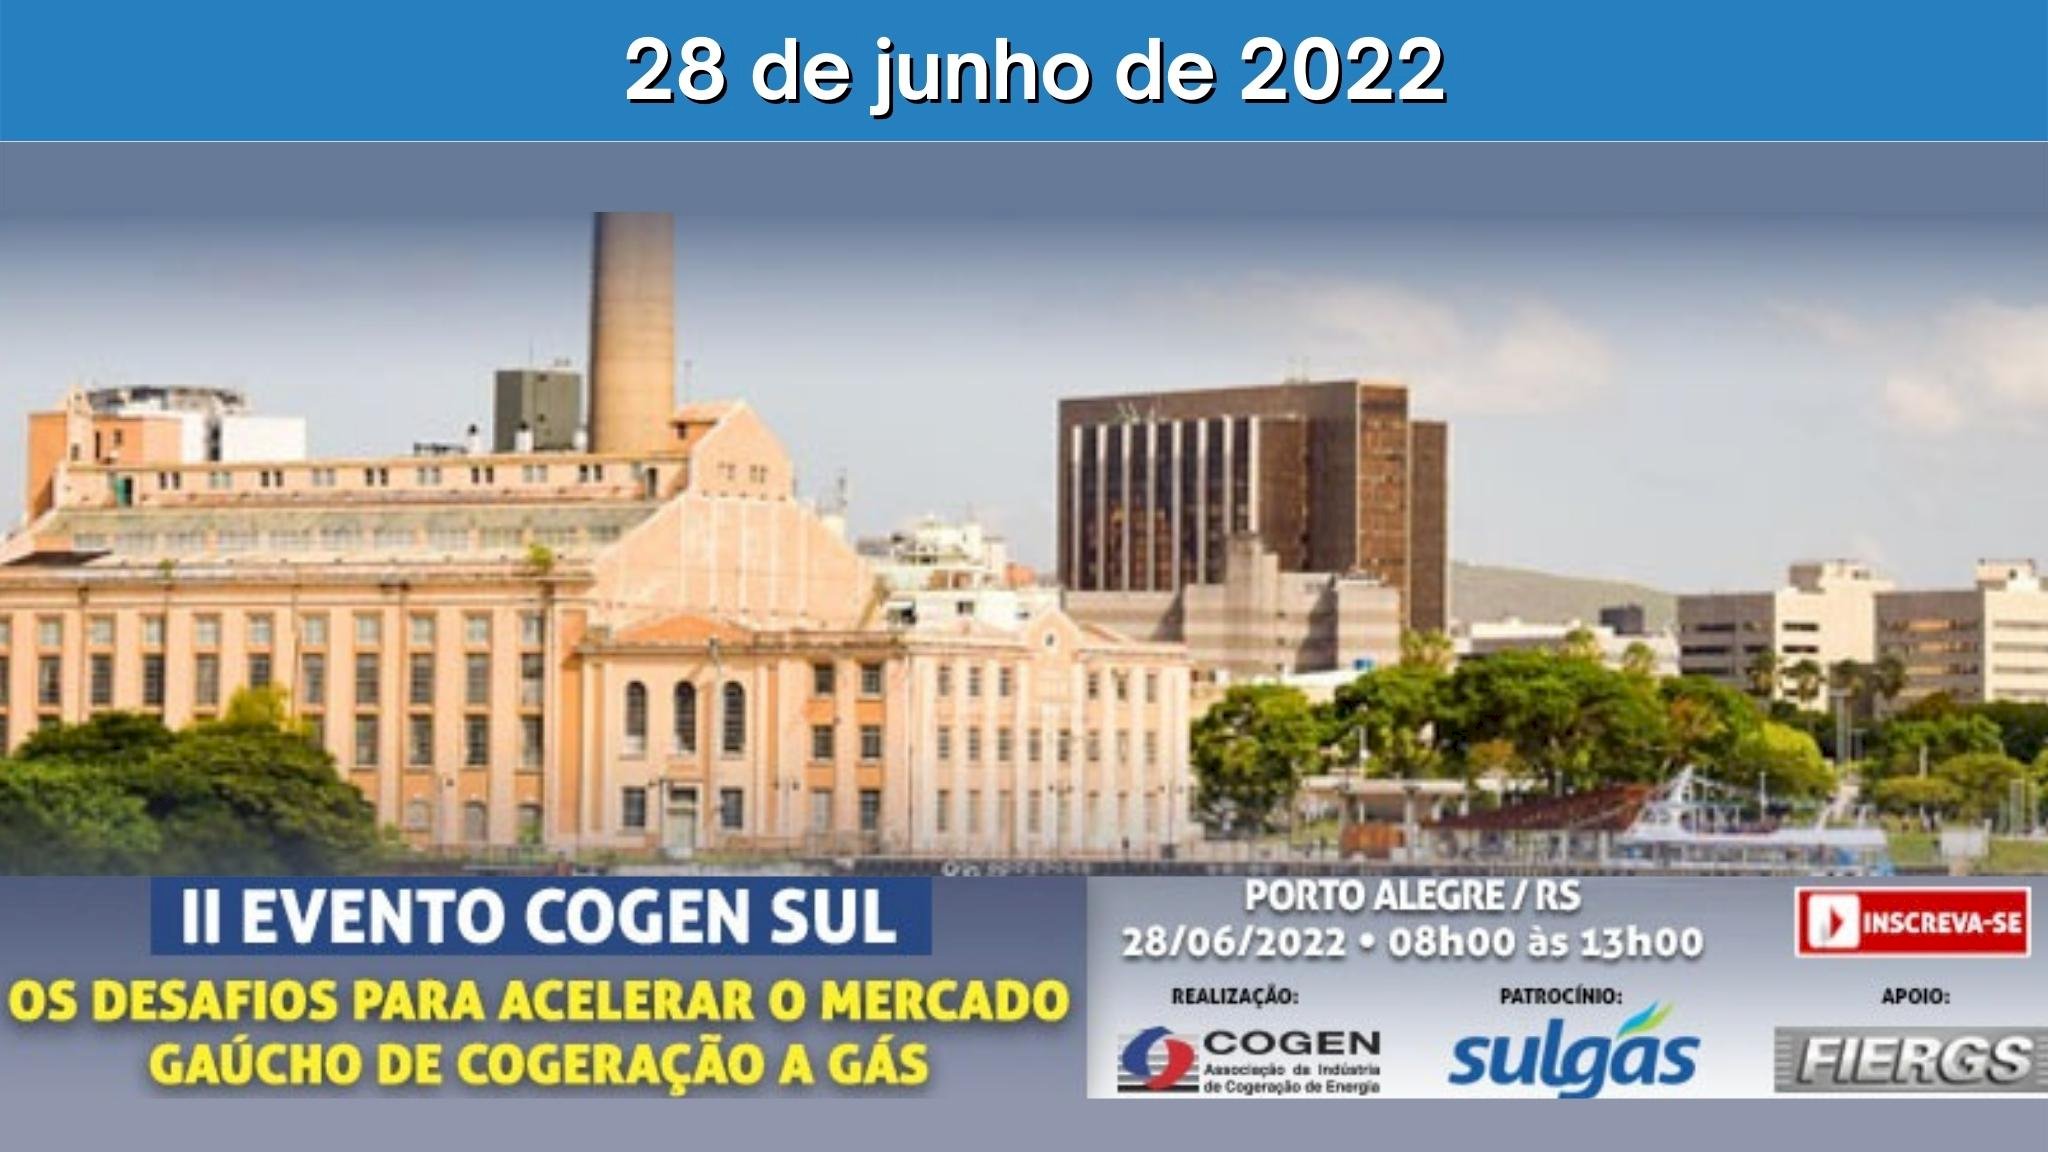 II Evento COGEN SUL “Os desafios para acelerar o Mercado Gaúcho de Cogeração a Gás”